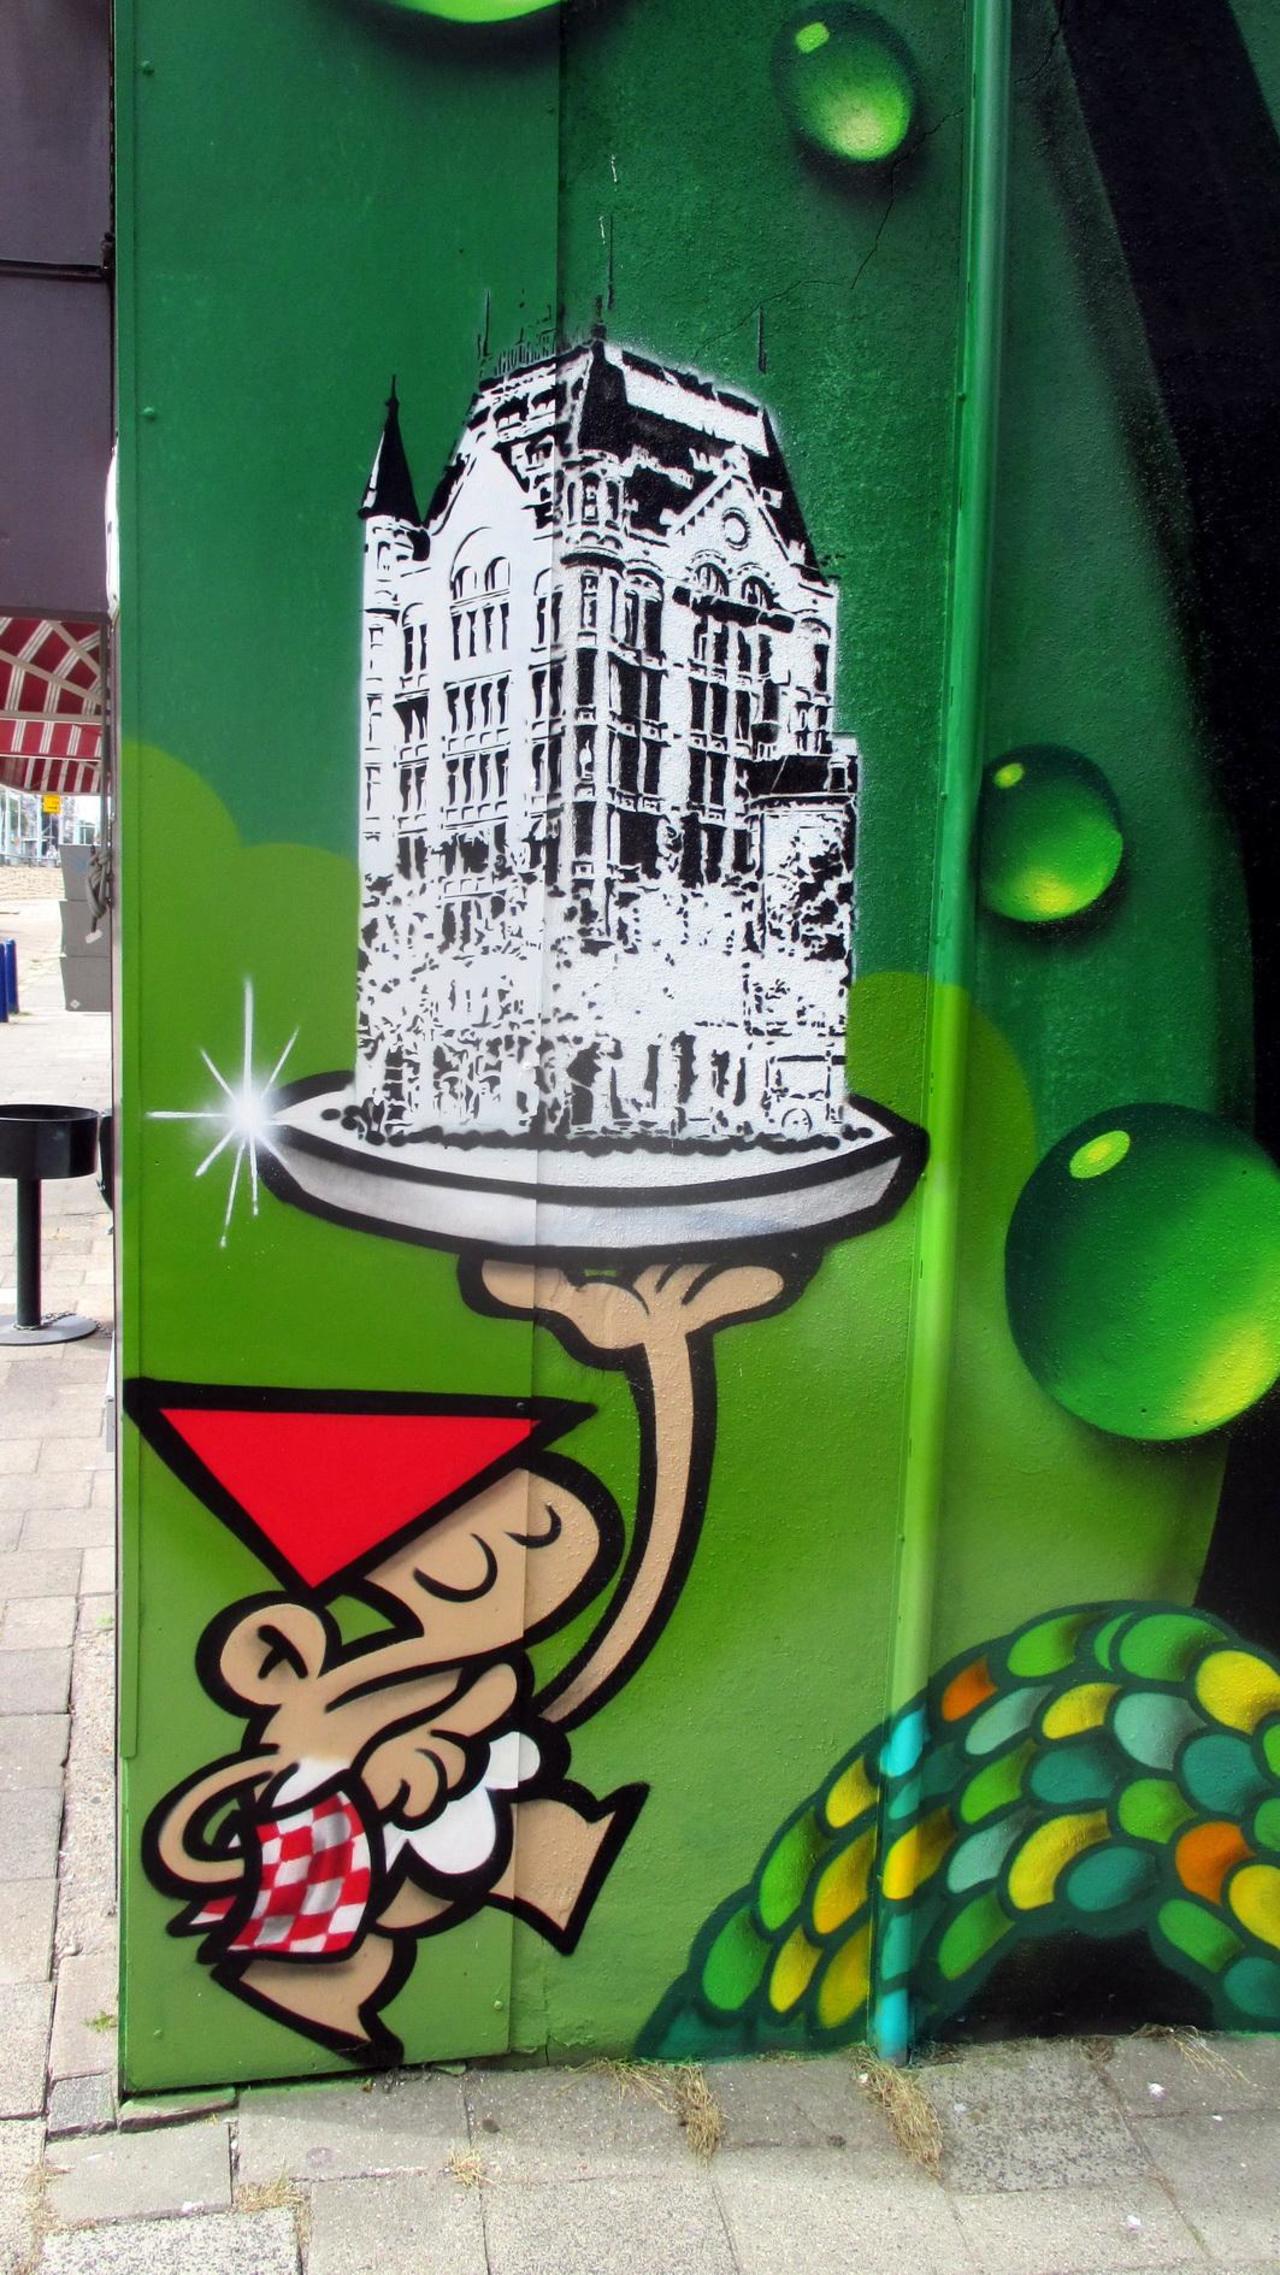 RT @RRoedman: #streetart #graffiti #mural nice work in #Rotterdam ,5 pics at http://wallpaintss.blogspot.nl http://t.co/iDzK8D66fN